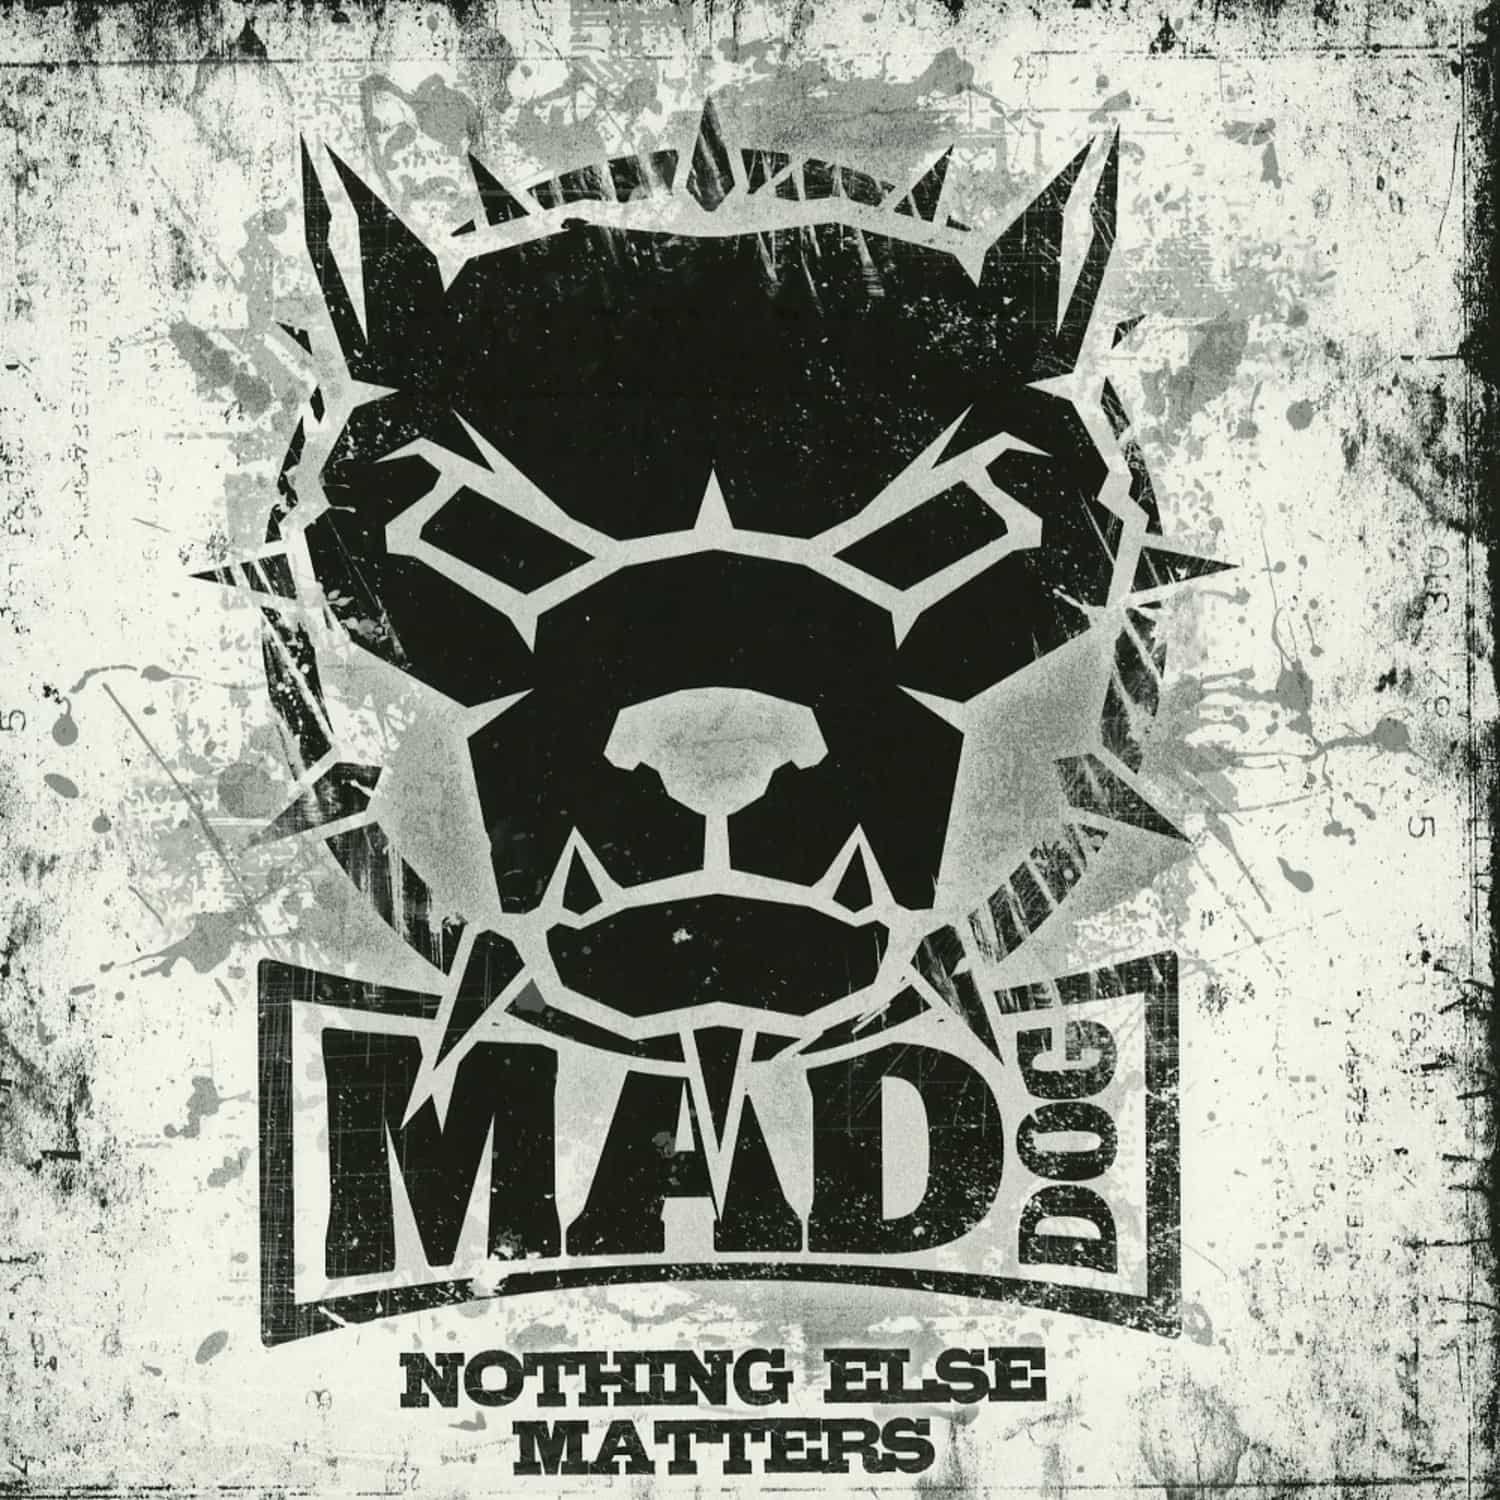 DJ Mad Dog - NOTHING ELSE MATTERS